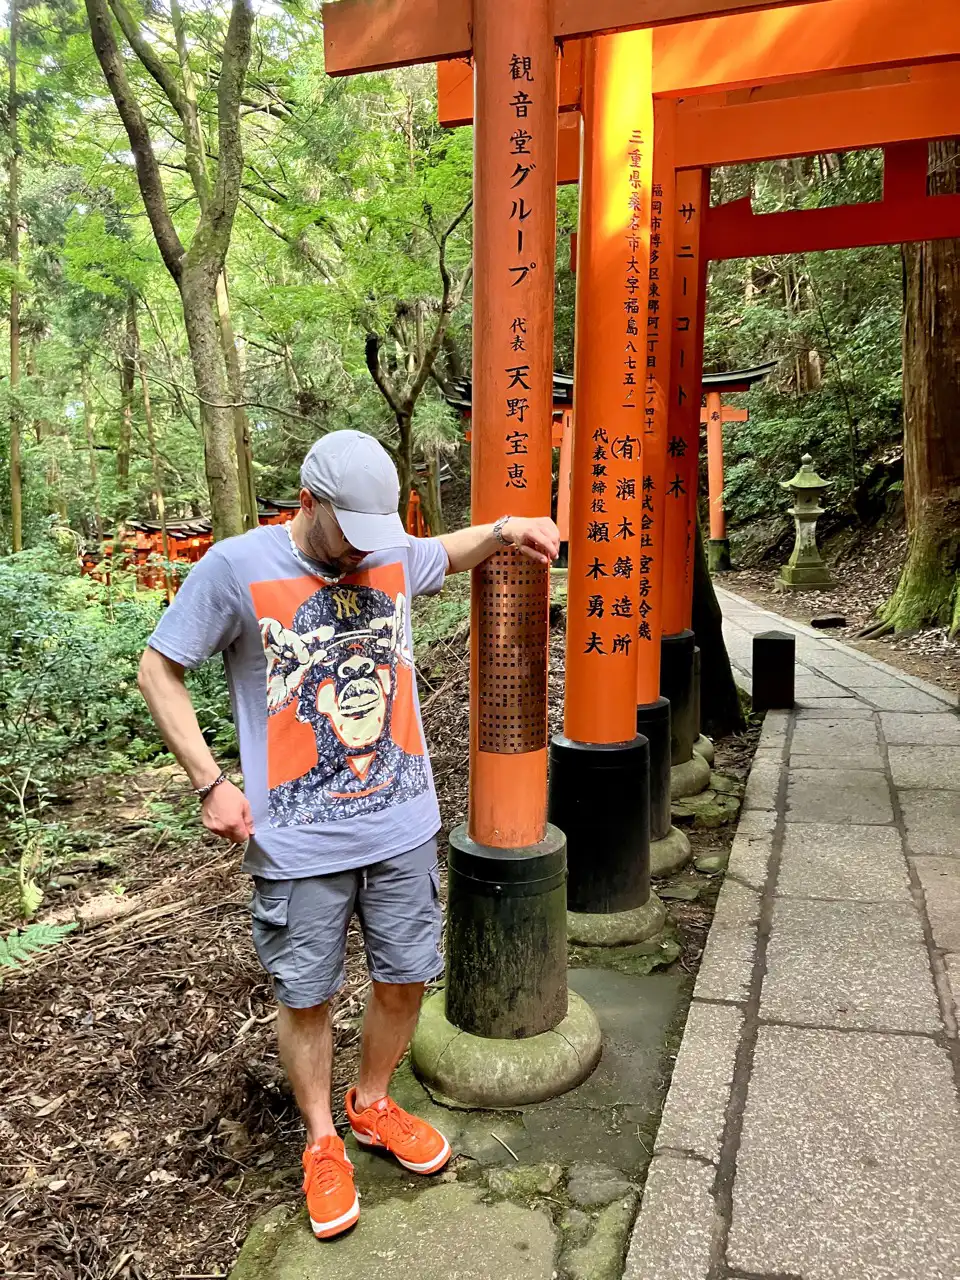 By Kerwin Jay-Z art t-shirt in Kyoto, Japan, 2023